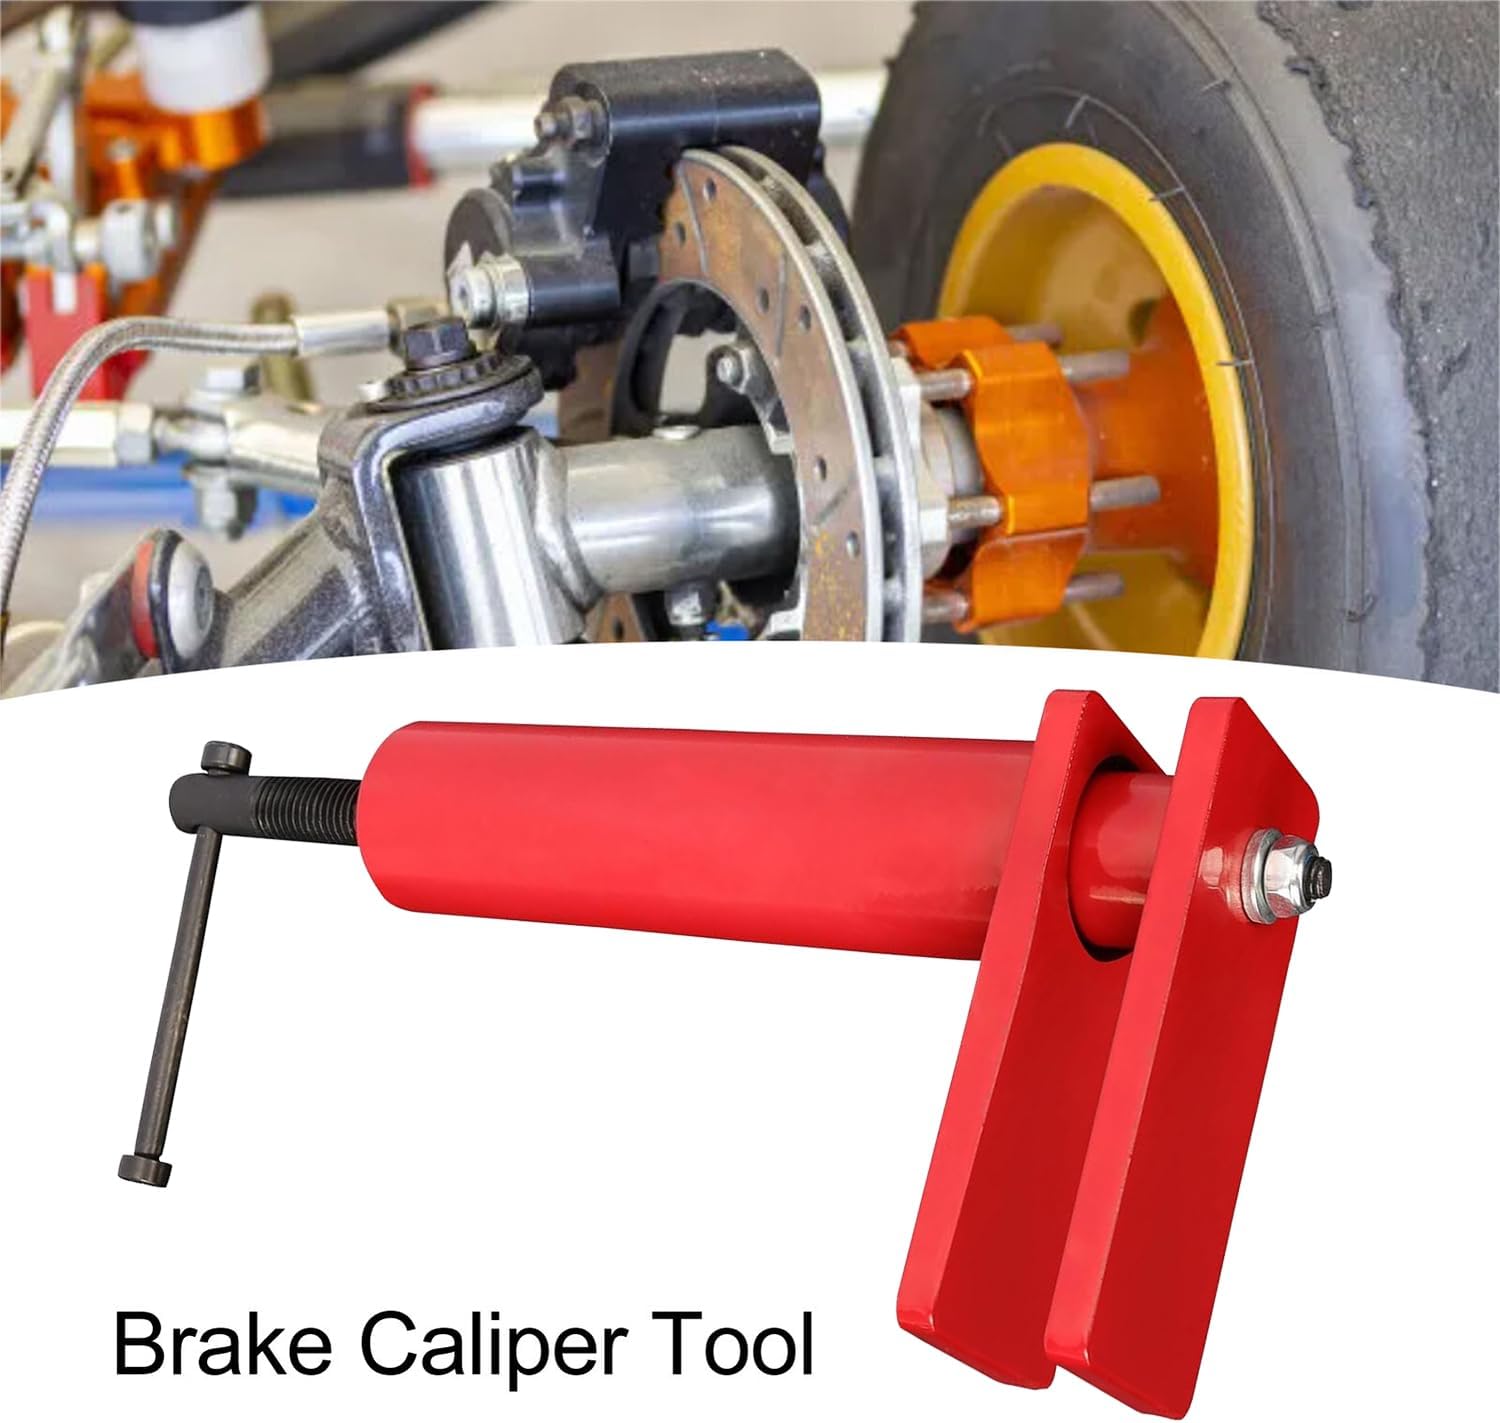 Universal Brake Caliper Tool for Auto Repair